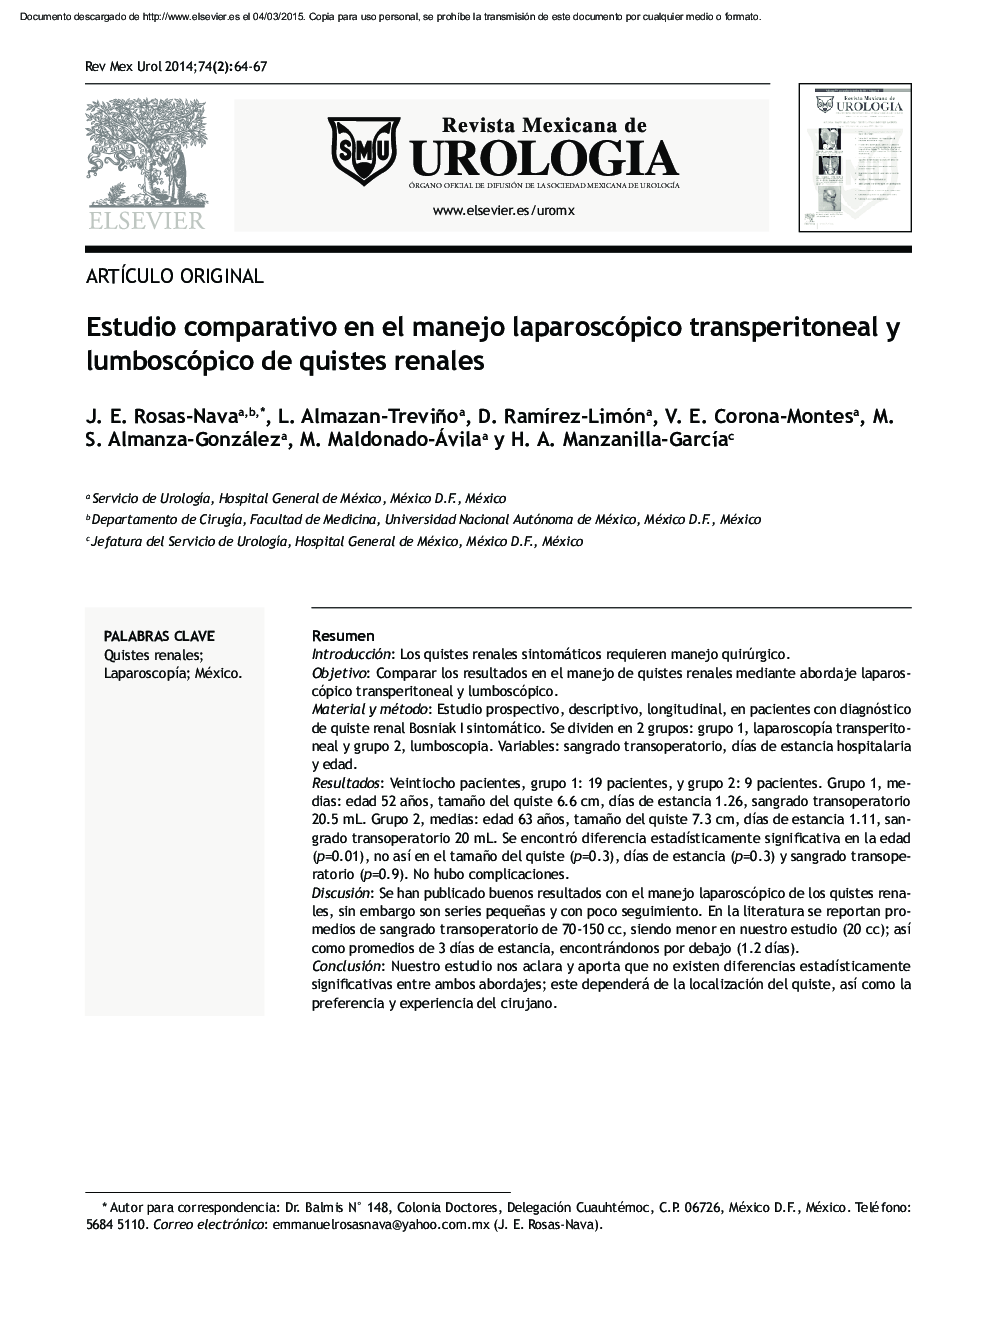 Estudio comparativo en el manejo laparoscópico transperitoneal y lumboscópico de quistes renales